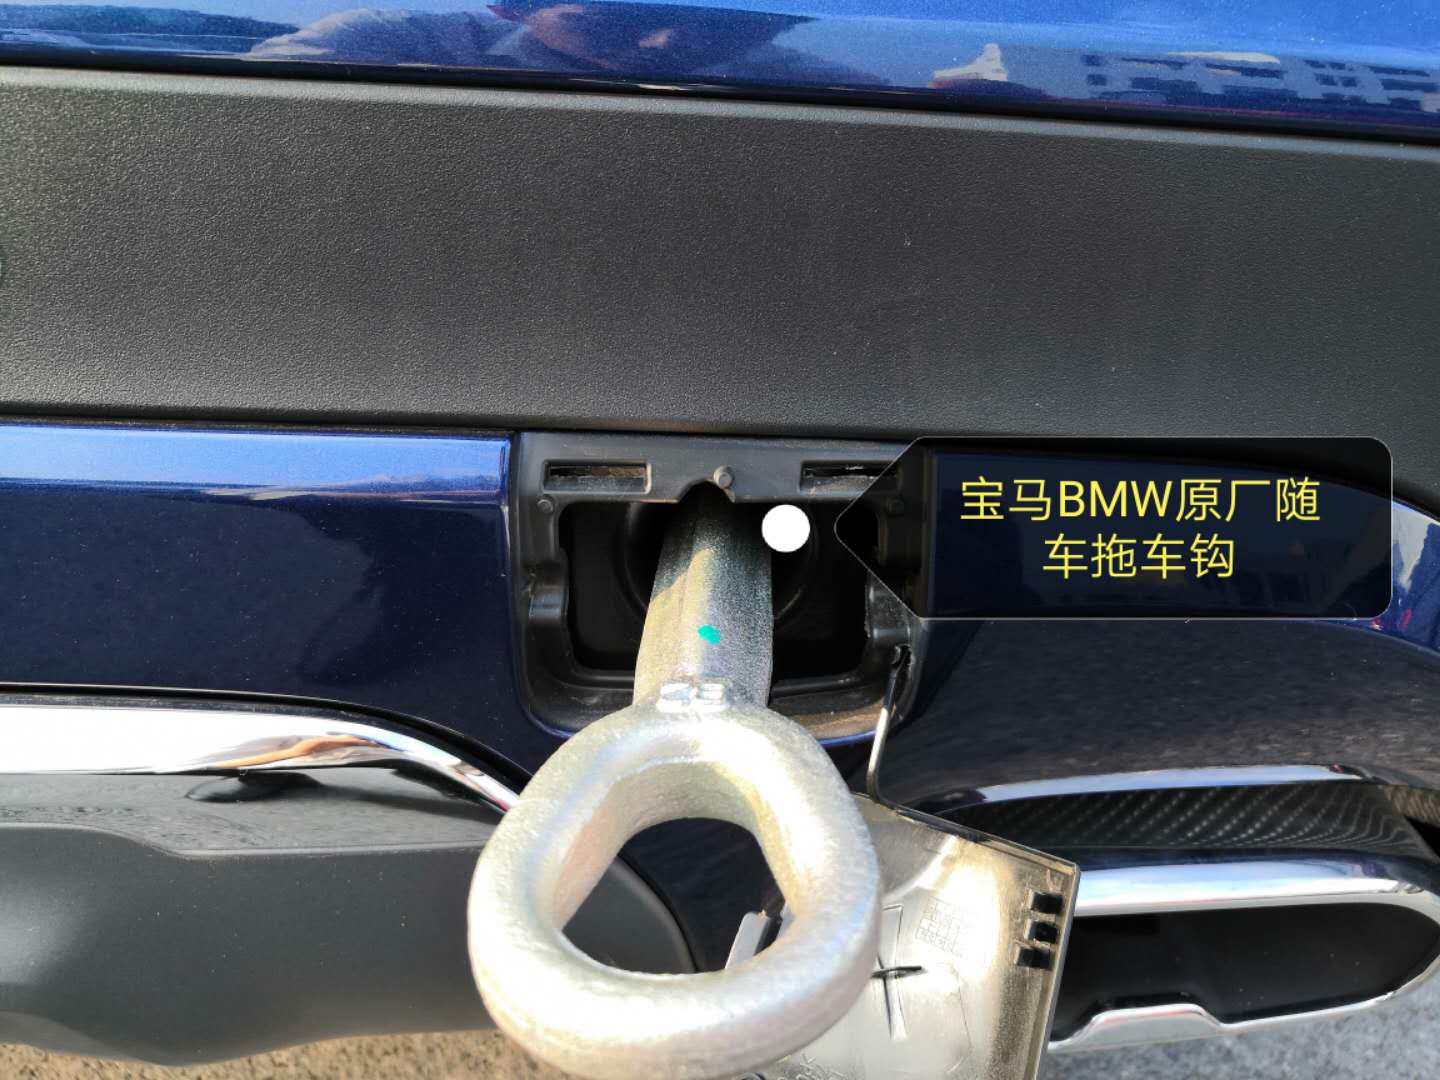 宝马拖车钩前后牵引钩 适用于BMW原厂汽车轮胎随车救援应急工具